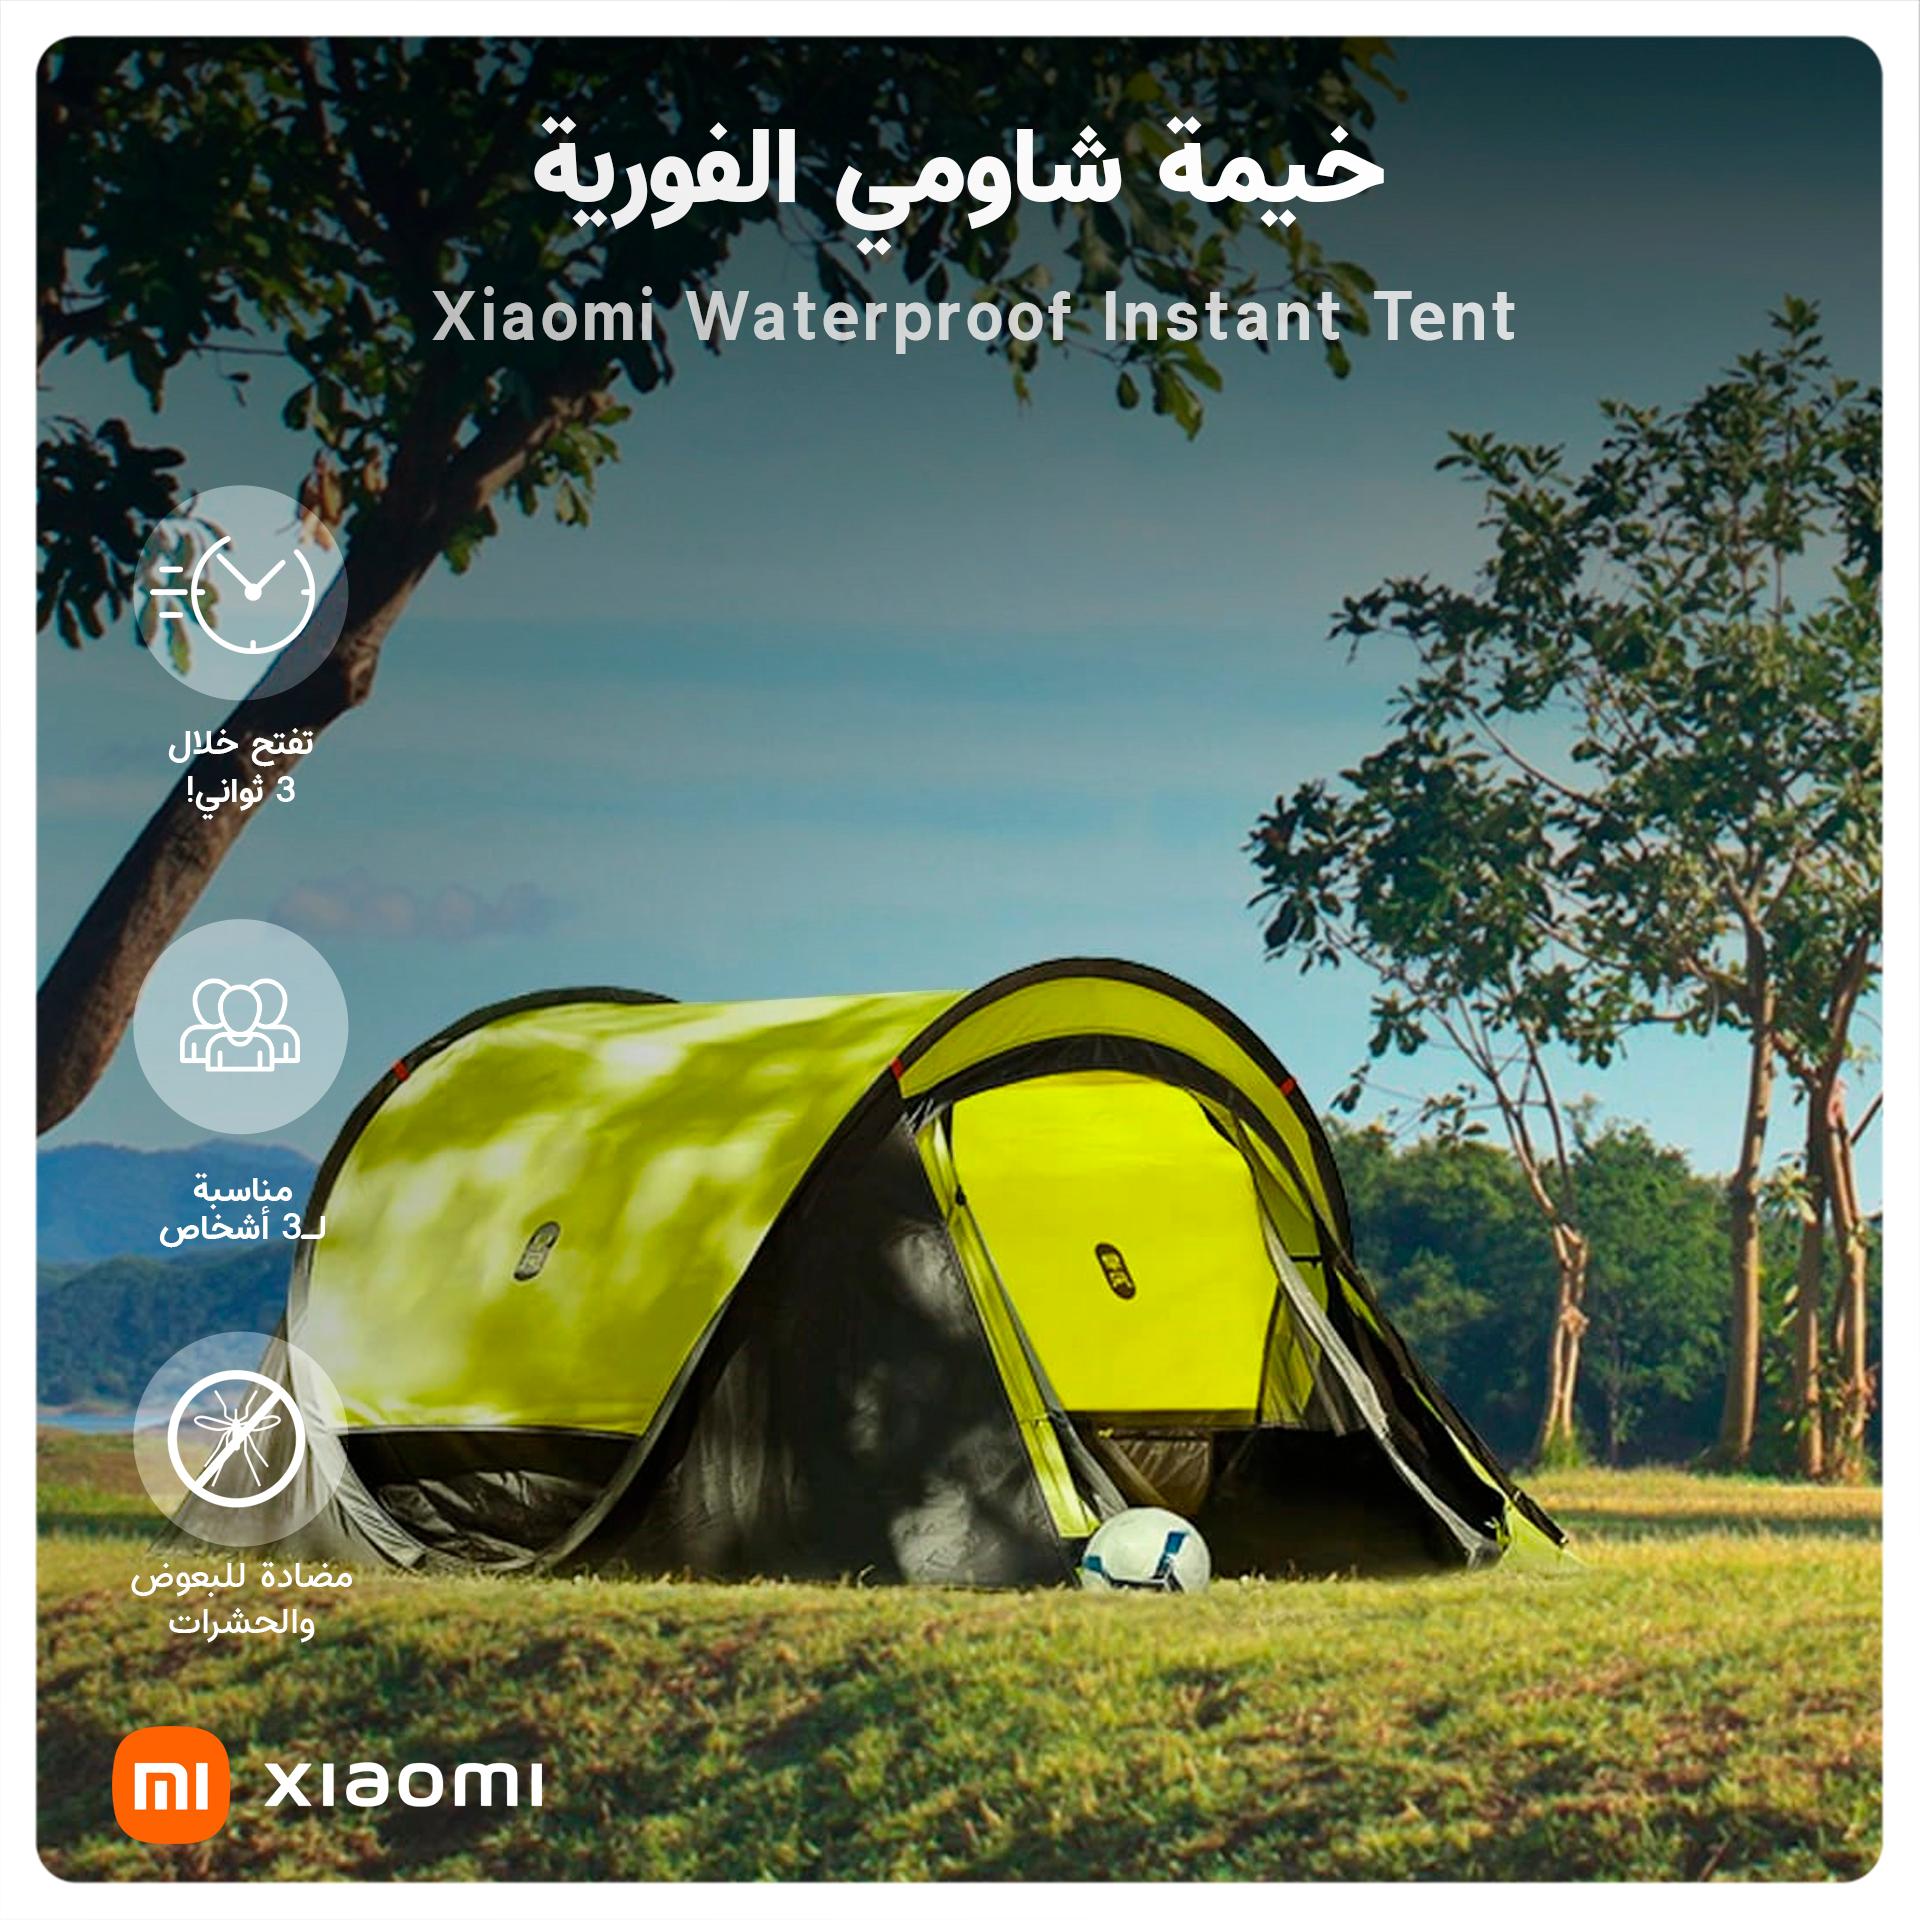 Xiaomi Waterproof Instant Tent